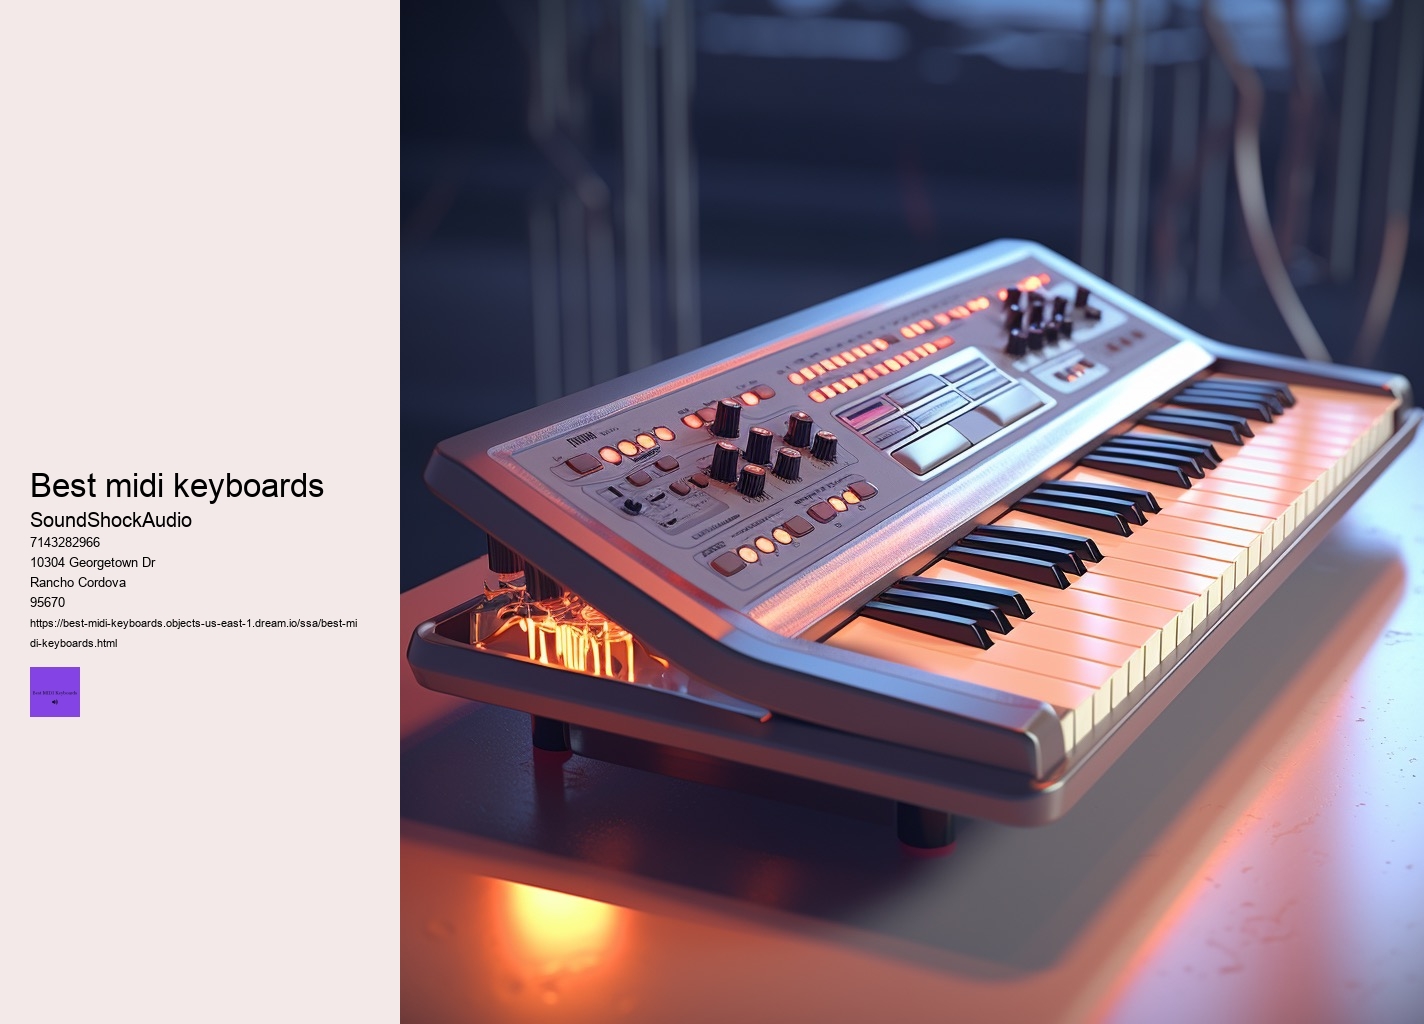 Is a MIDI keyboard like a piano?